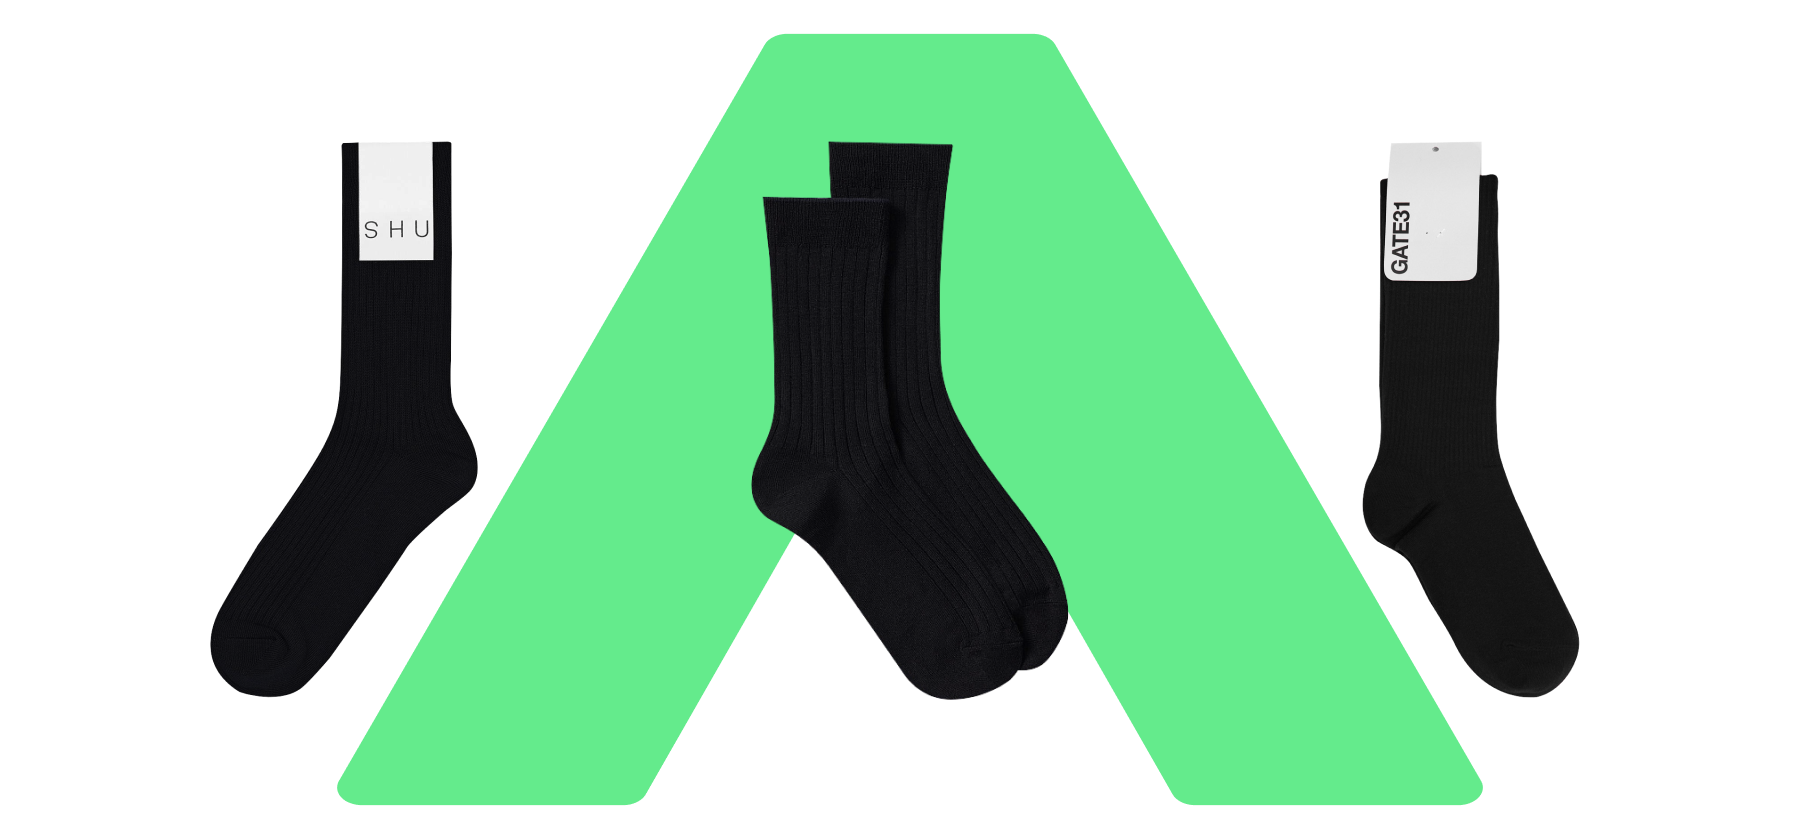 Где купить лучшие черные носки: проверяем 15 брендов